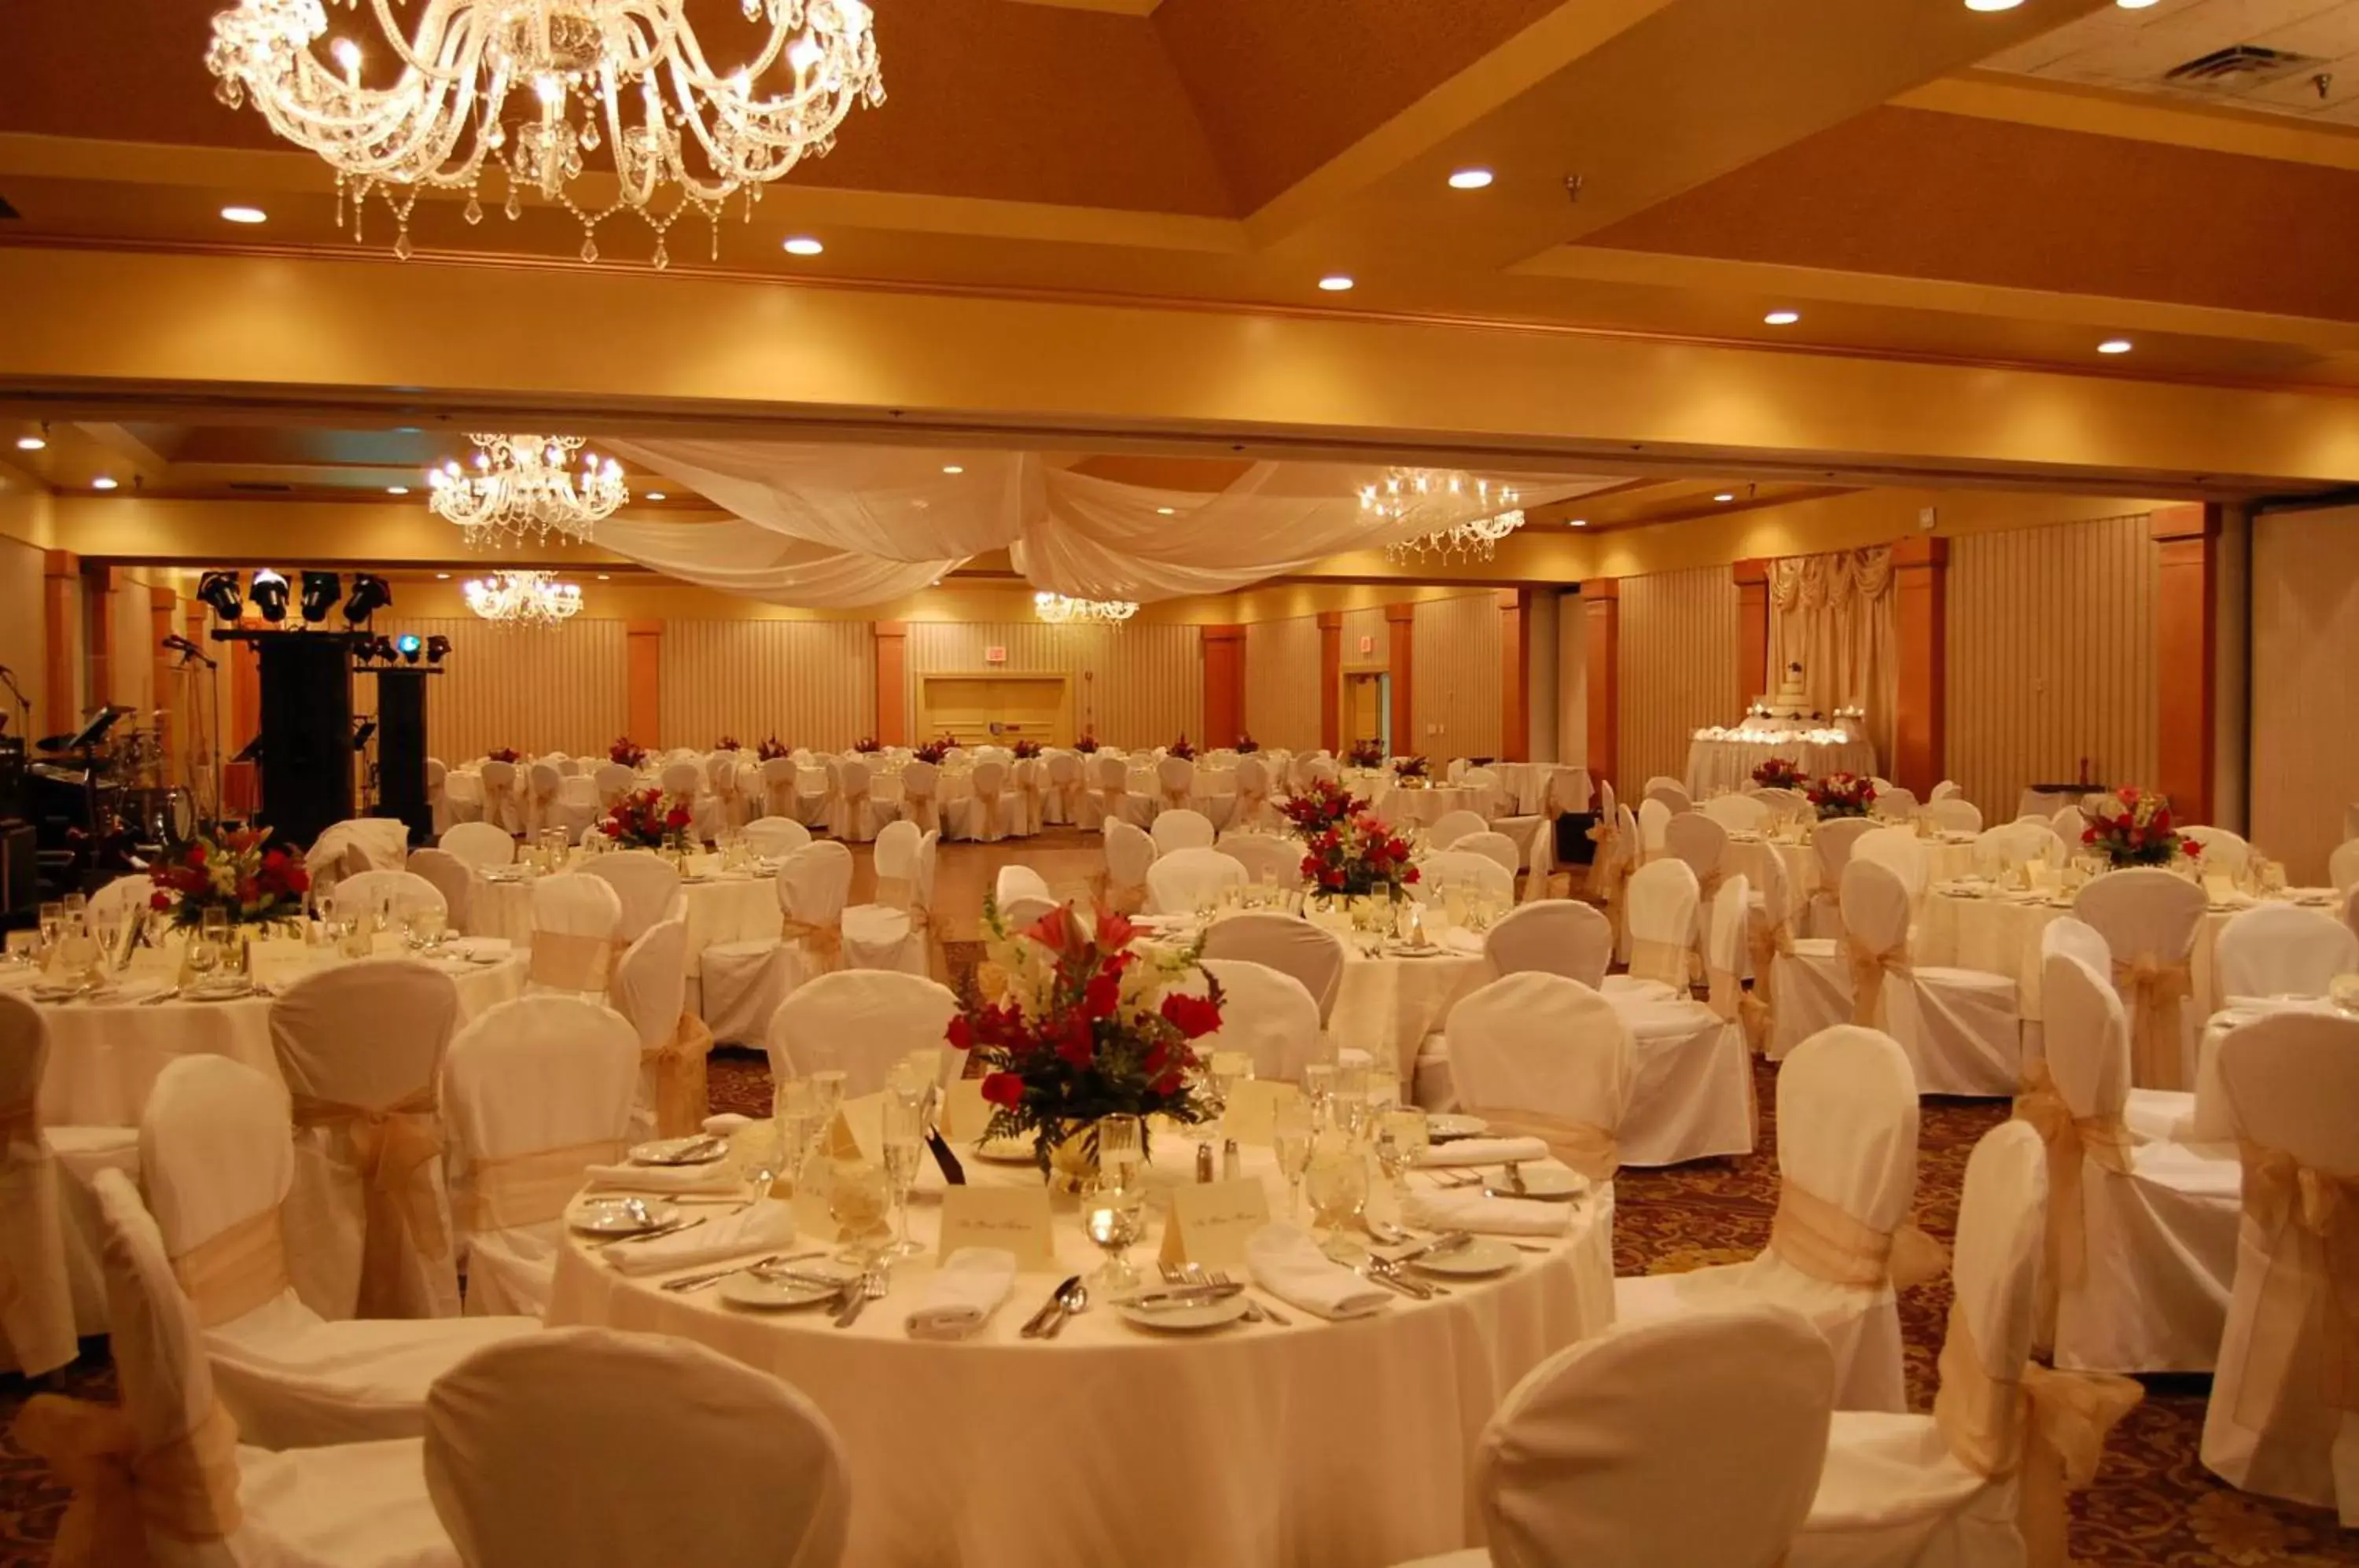 Banquet/Function facilities, Banquet Facilities in Radisson Lackawanna Station Hotel Scranton